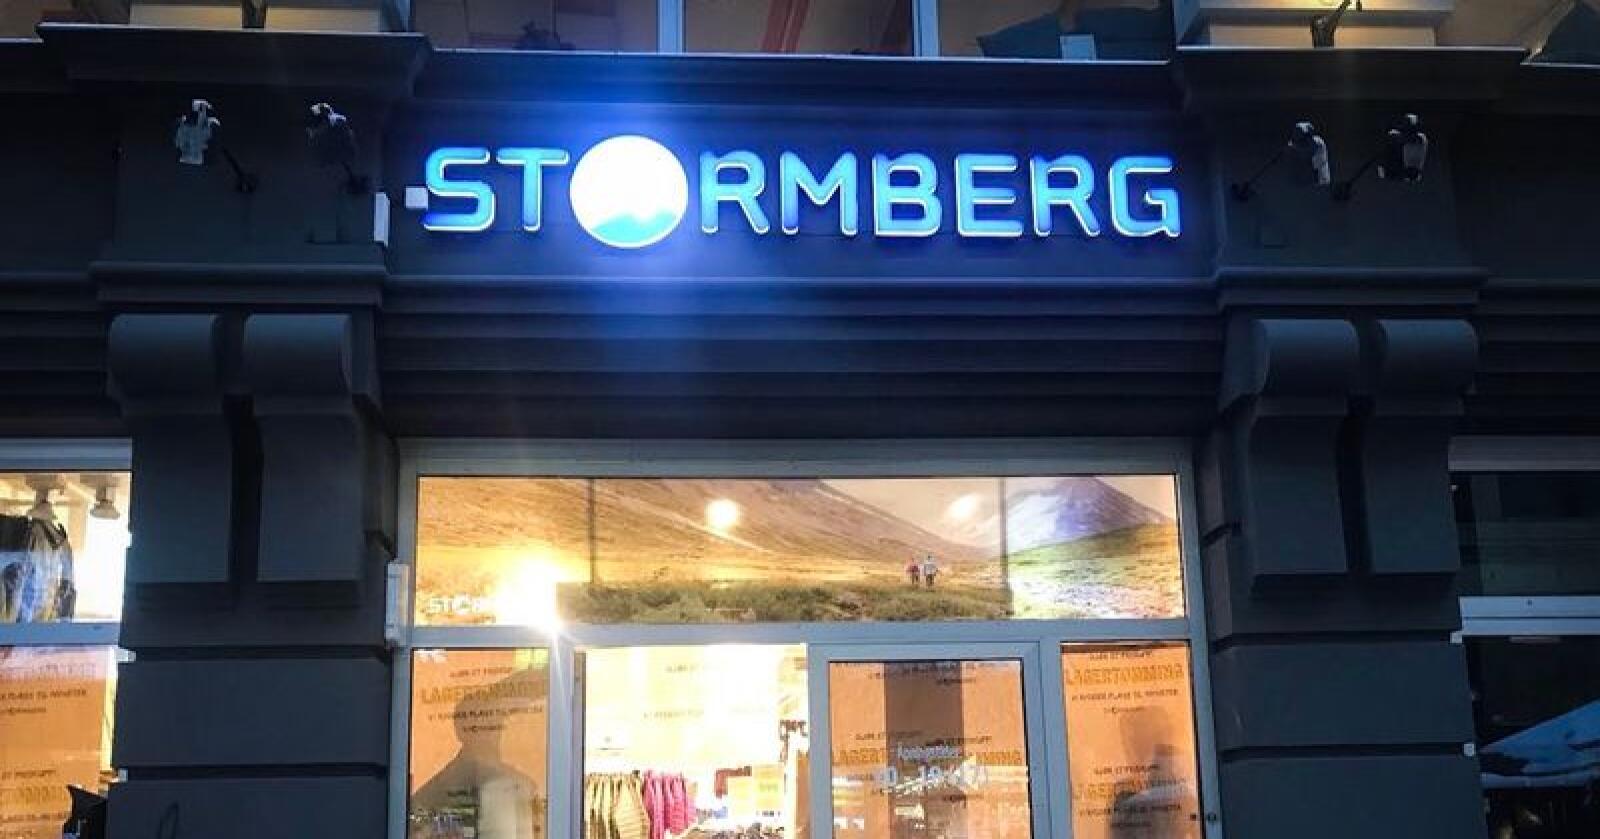 Stormberg har både mistet kunder, og nye har kommet til etter at de gjentatte ganger den siste uka har engasjert seg i ulvedebatten. Foto: Hanna Taugbøl